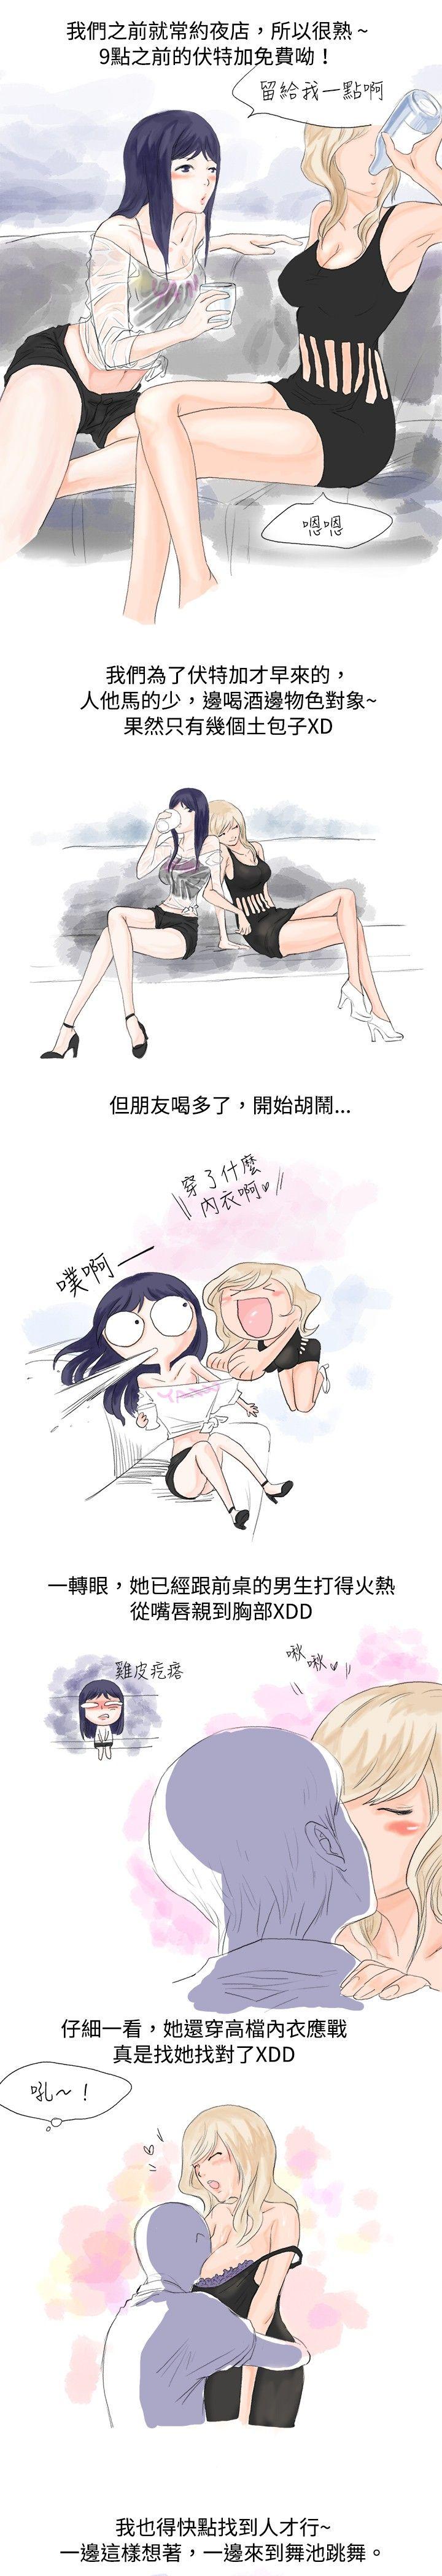 秘密Story  女大生的夜店一夜情(上) 漫画图片4.jpg